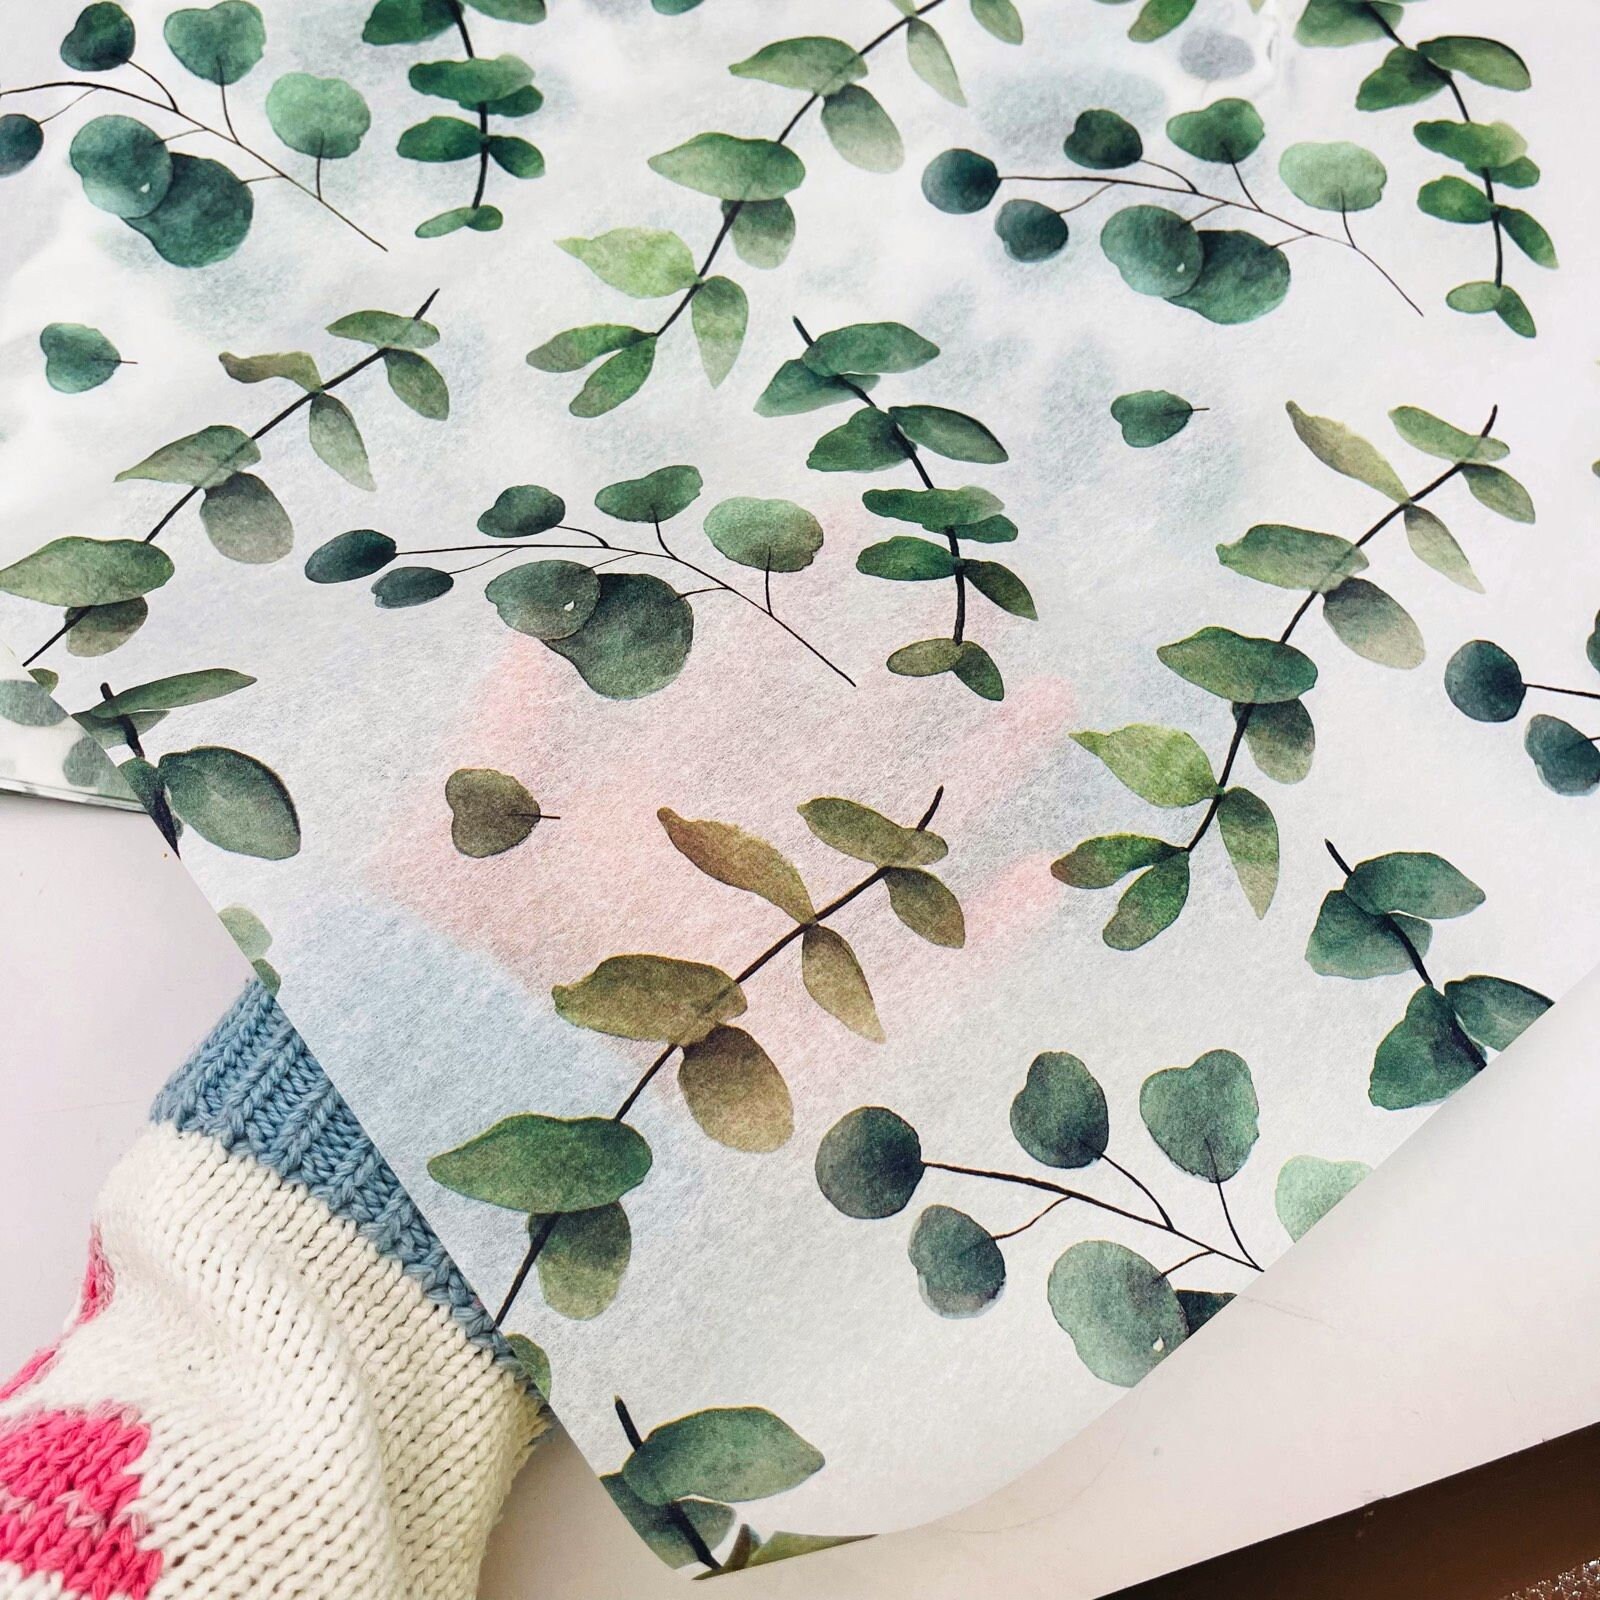 Emerald Green Tissue Paper Squares, Bulk 10 Sheets, Premium Gift